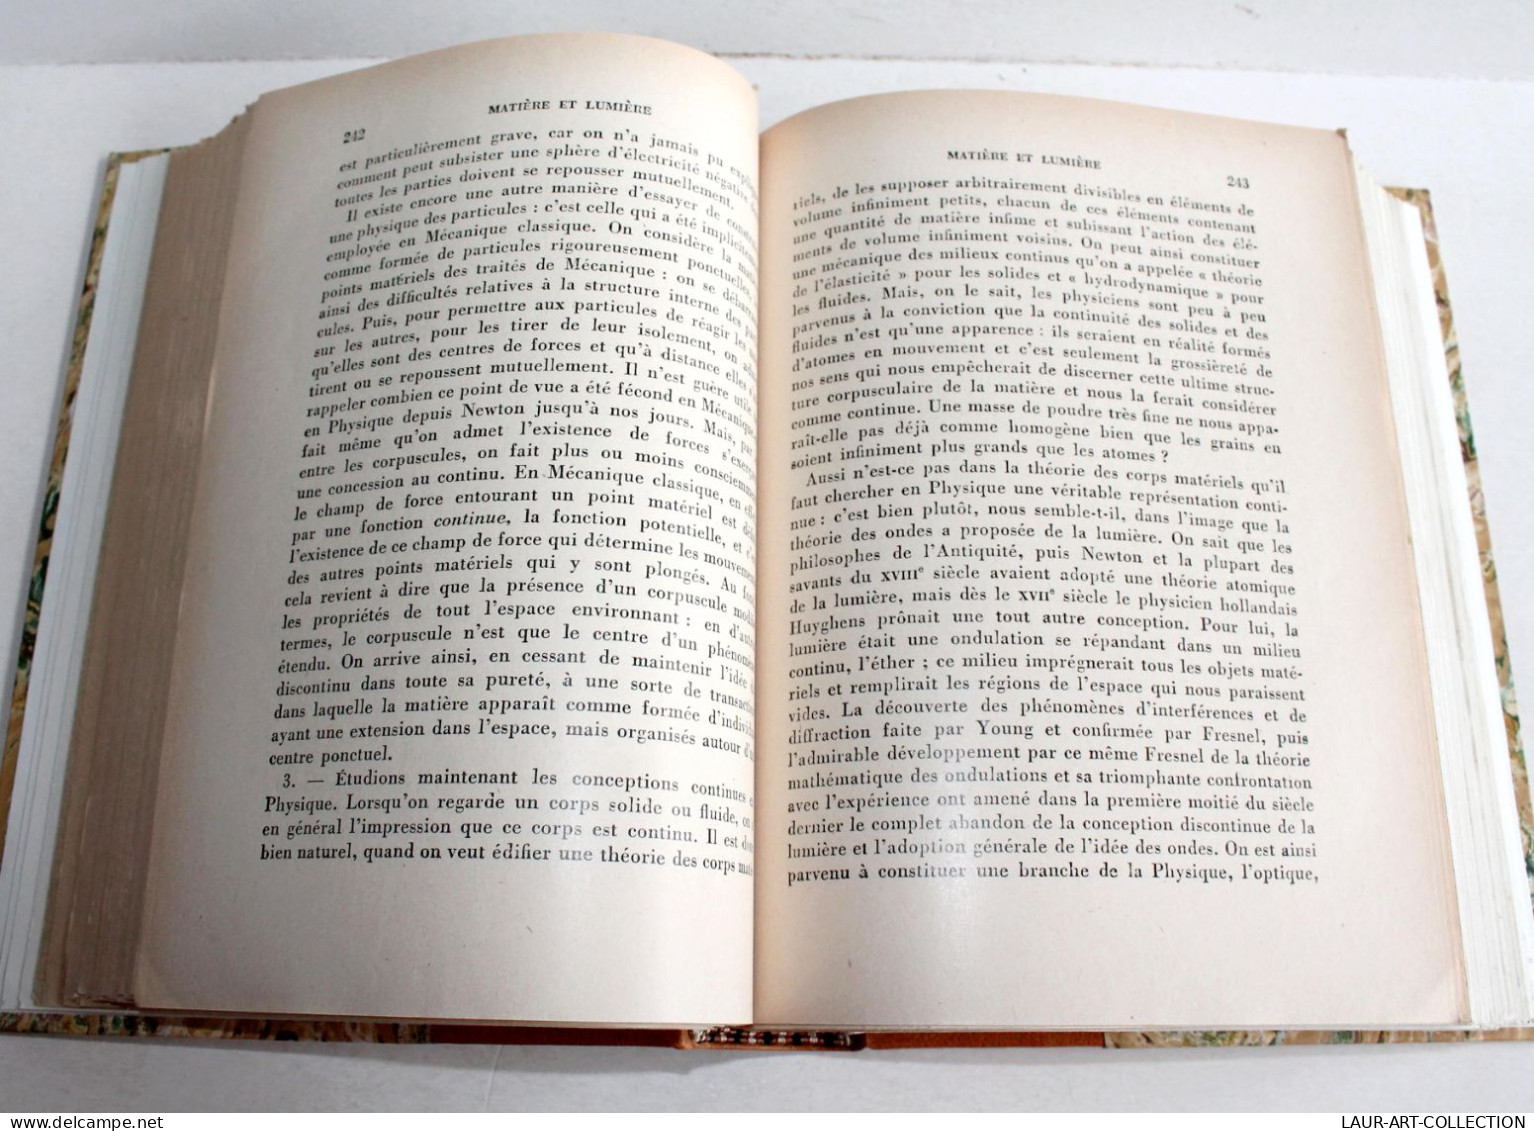 ENVOI D'AUTEUR LOUIS DE BROGLIE + MATIERE & LUMIERE + PHYSIQUE & MICROPHYSIQUE 1937 / ANCIEN LIVRE XXe SIECLE (2204.32) - Livres Dédicacés